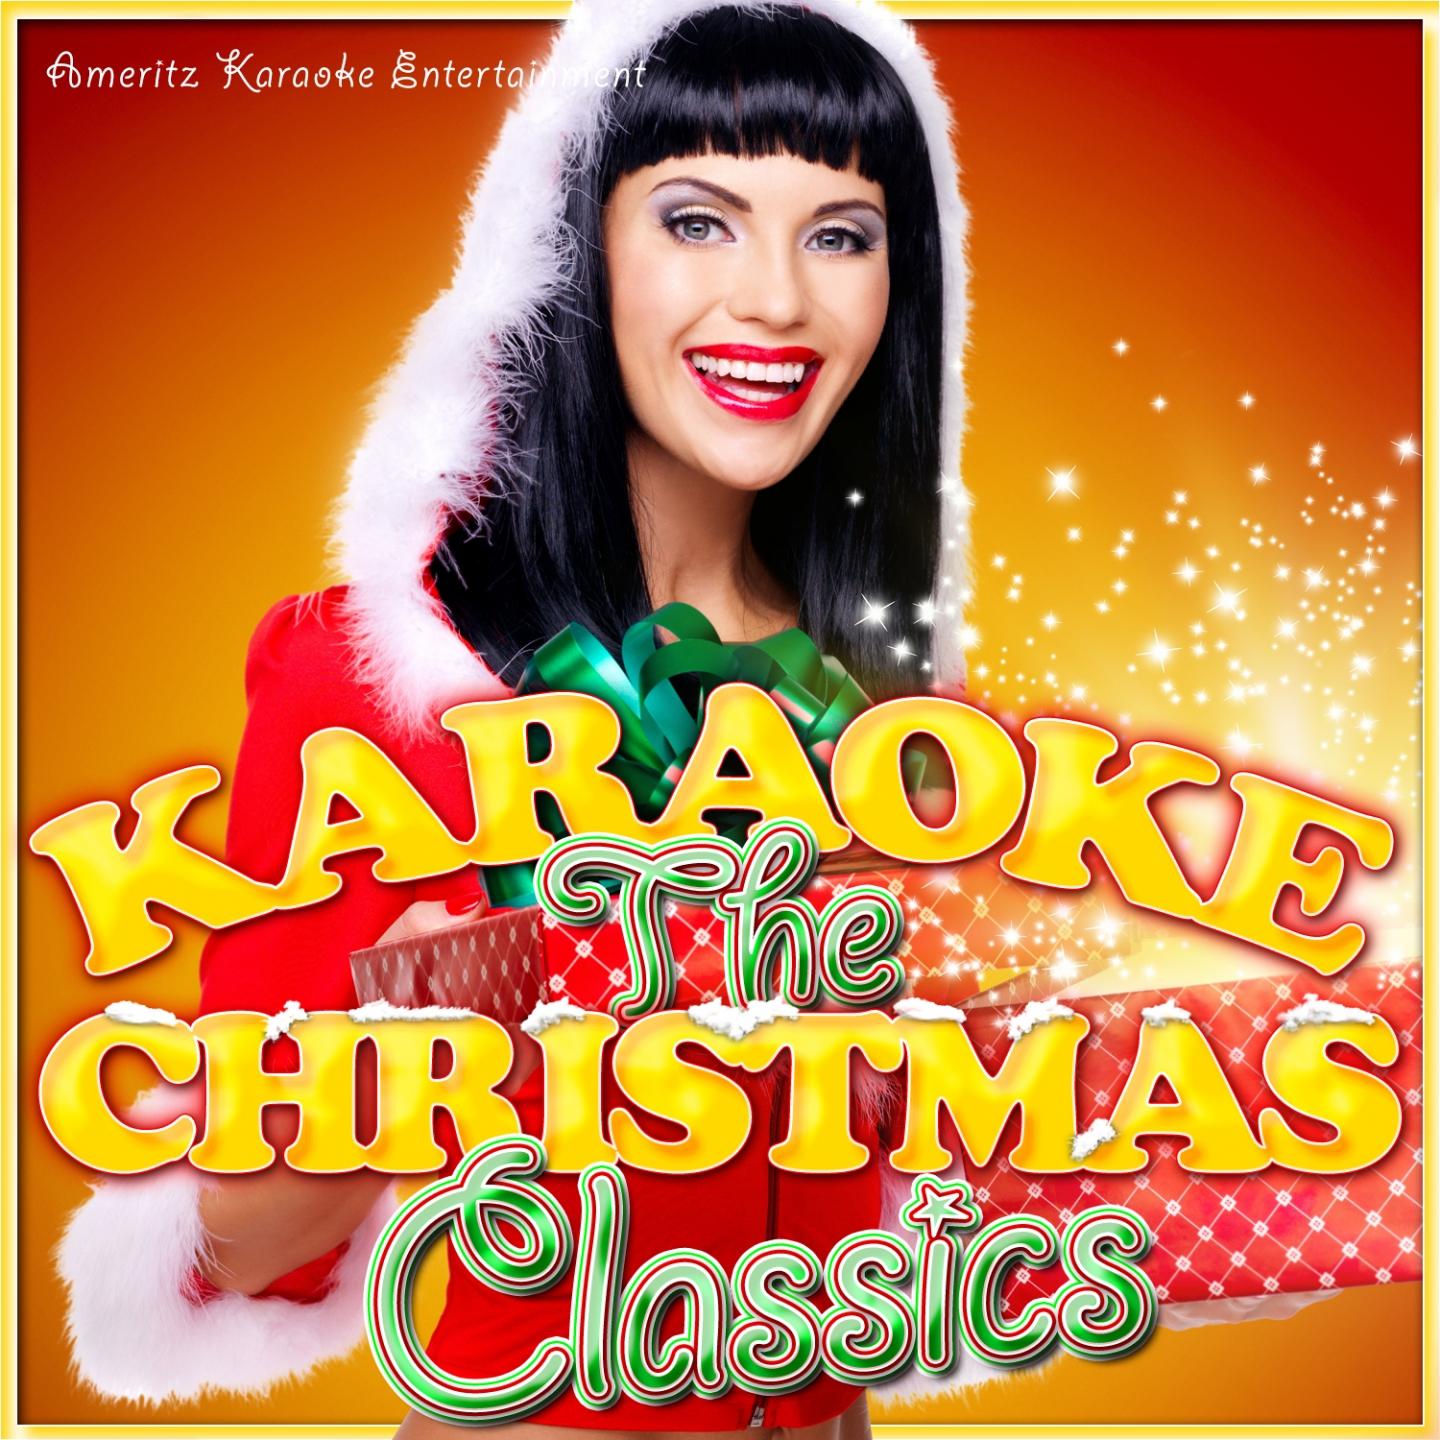 Christmas Is My Time of Year (Karaoke Version) [Originally Performed By D. Jones]